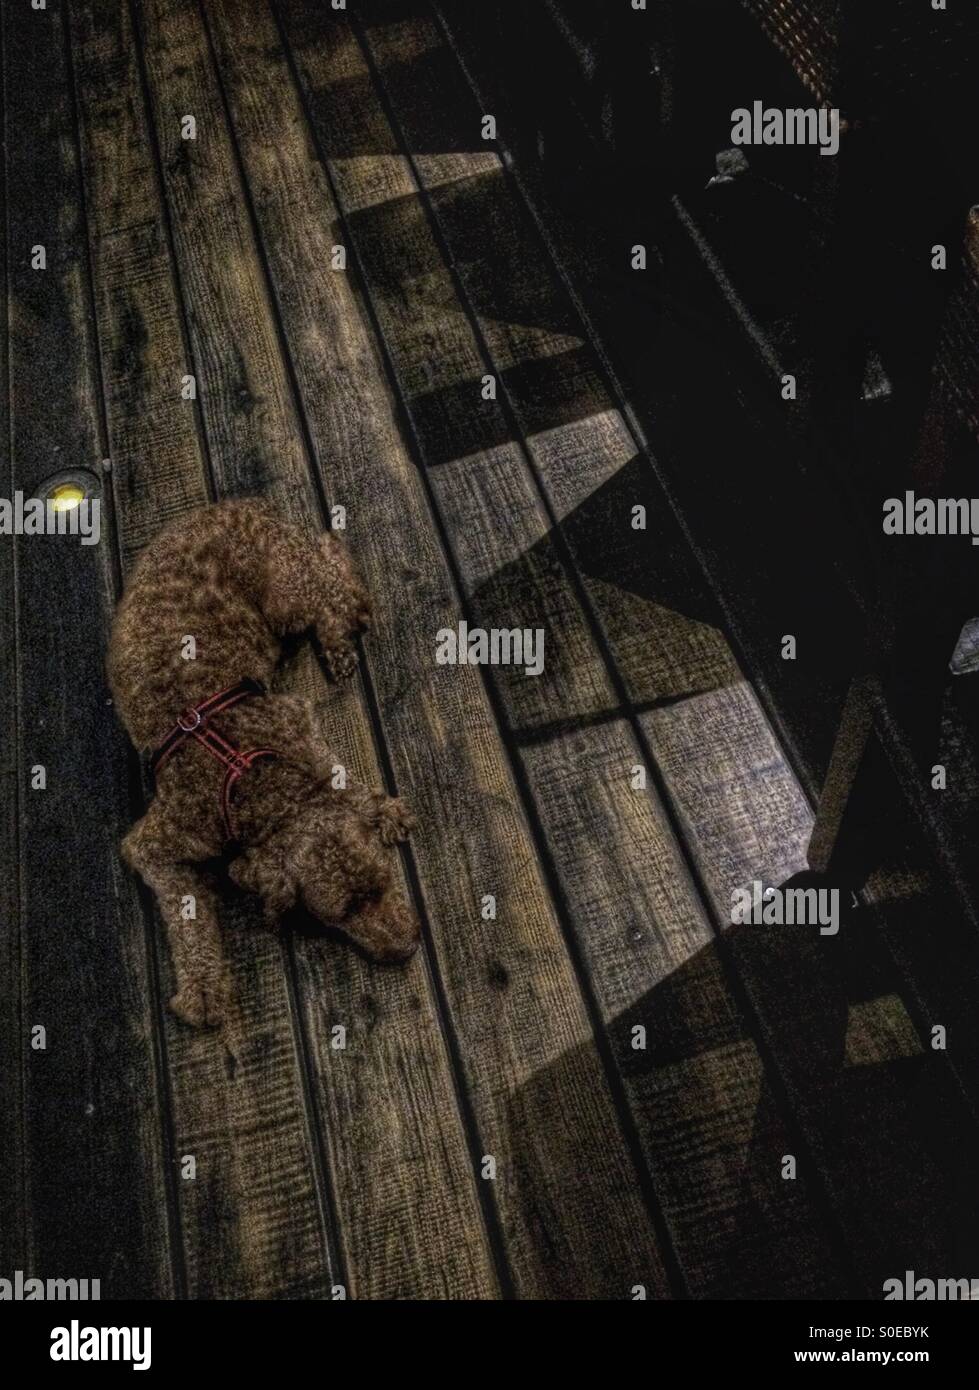 Ein rötlich-braune gelangweilter Hund liegt auf einem braunen Holzdeck unter hohen Stühlen Schatten werfen. Stockfoto